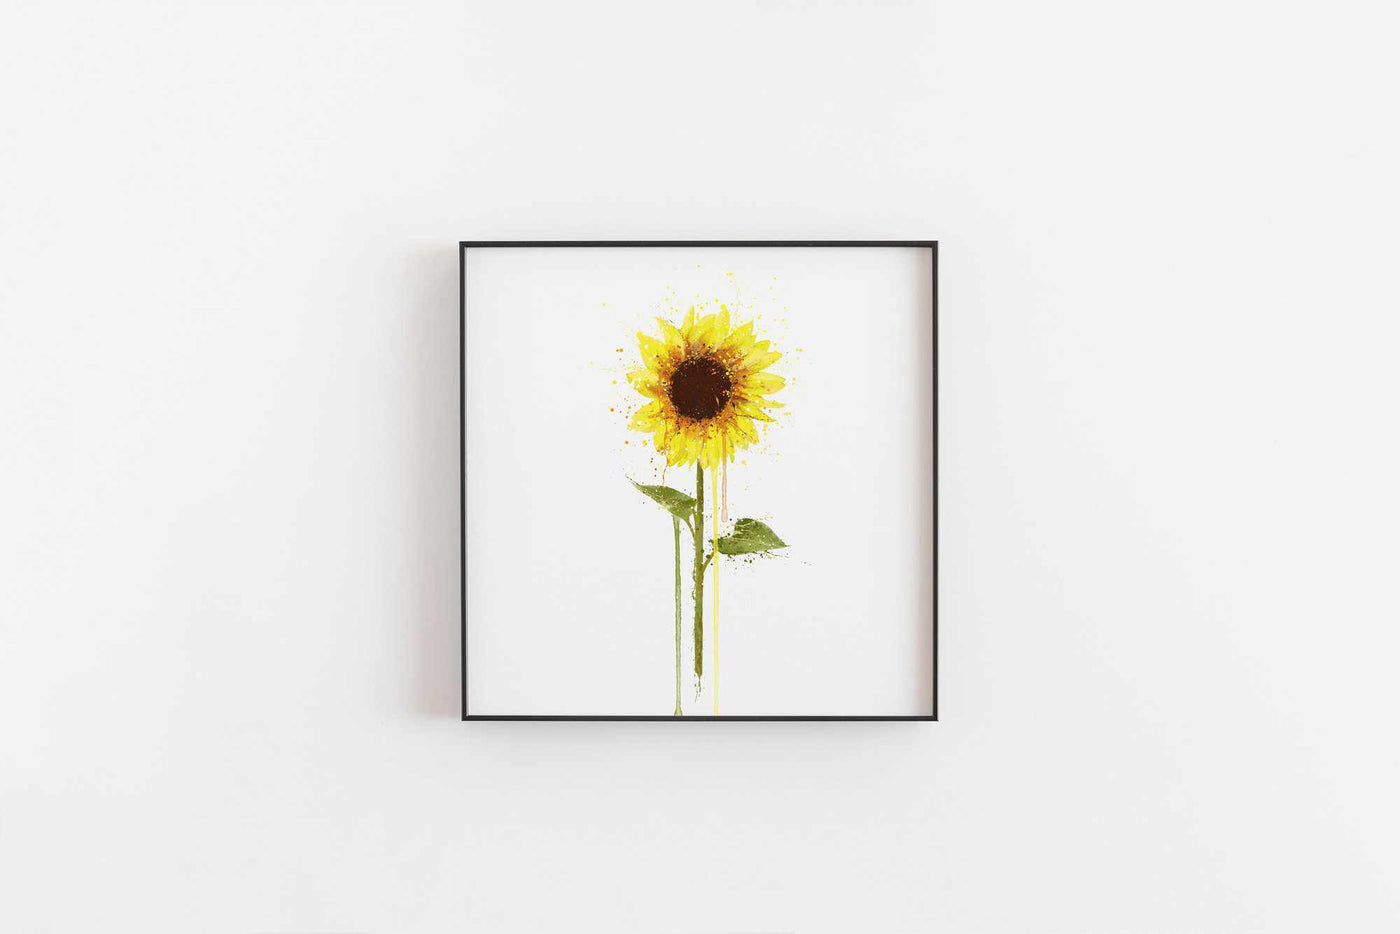 Flower Wall Art Print 'Sunflower'